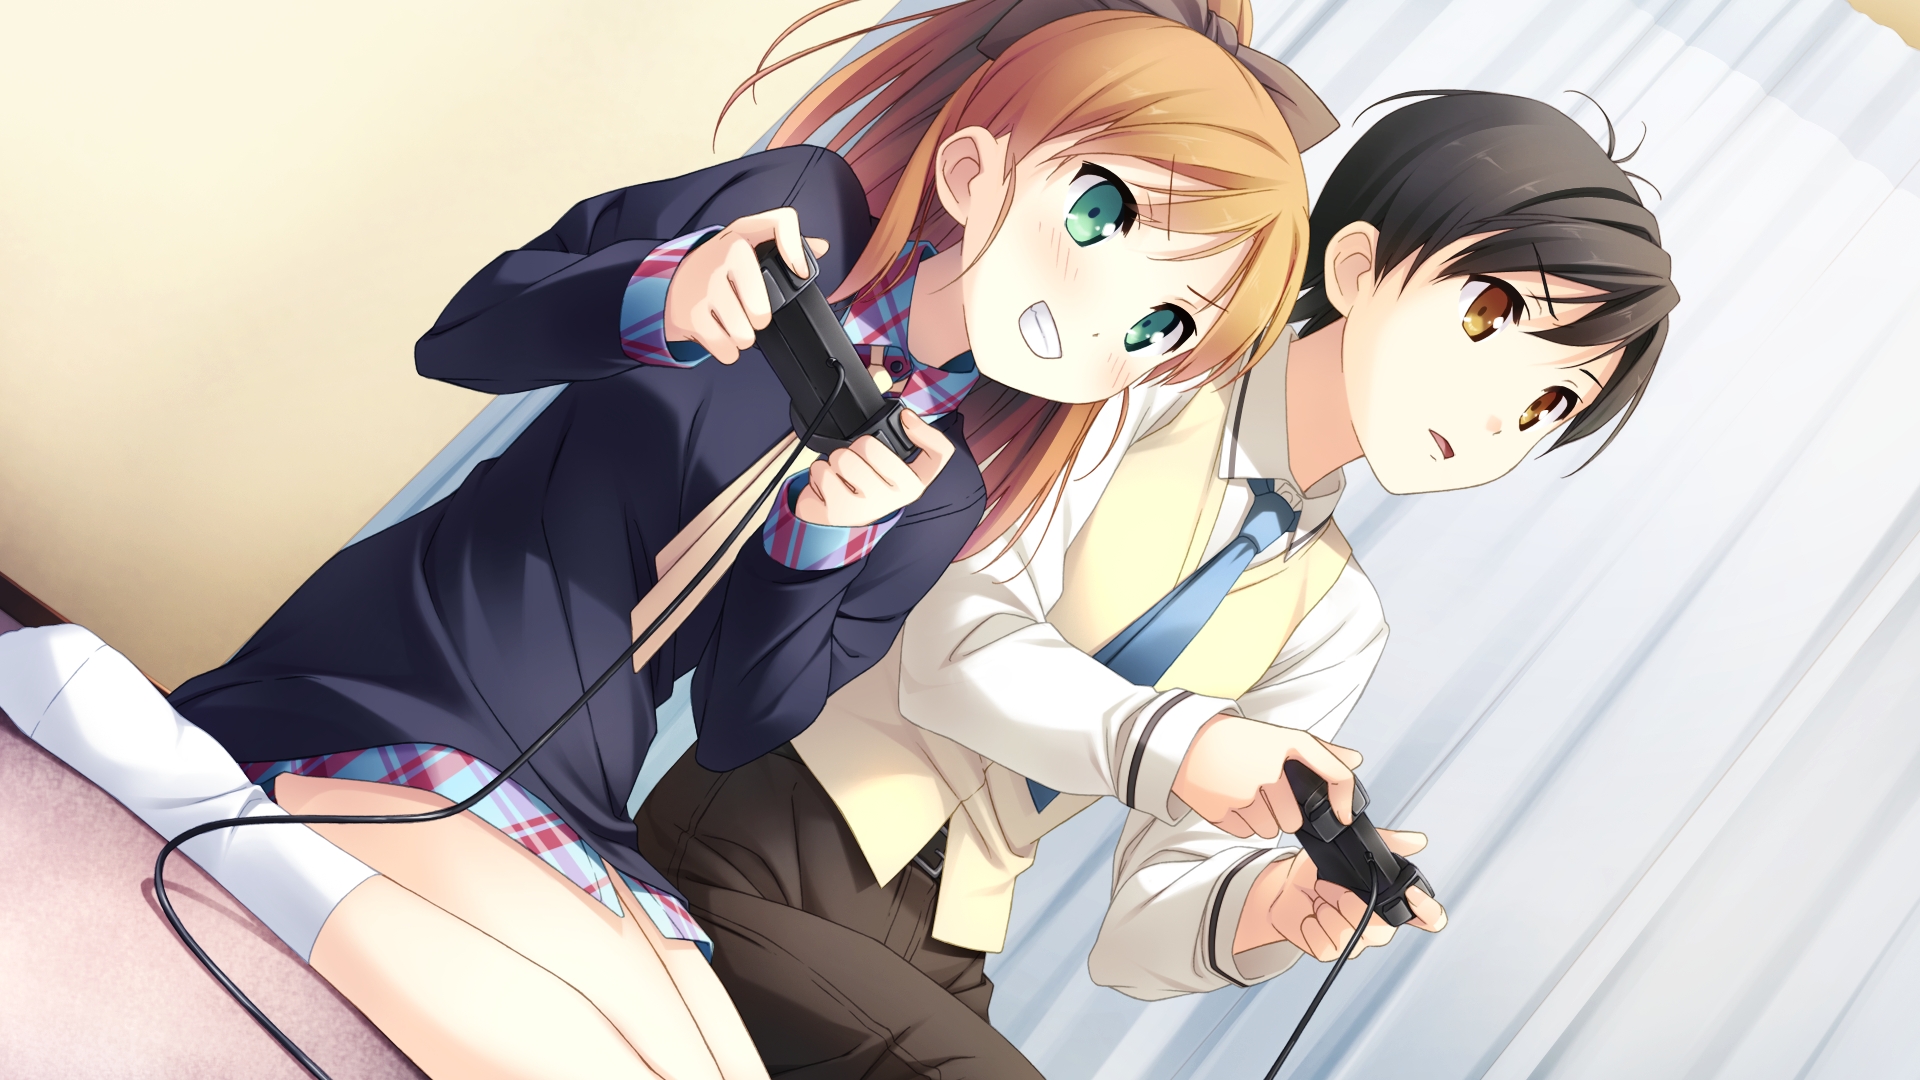 Anime Boy And Girl Image 4